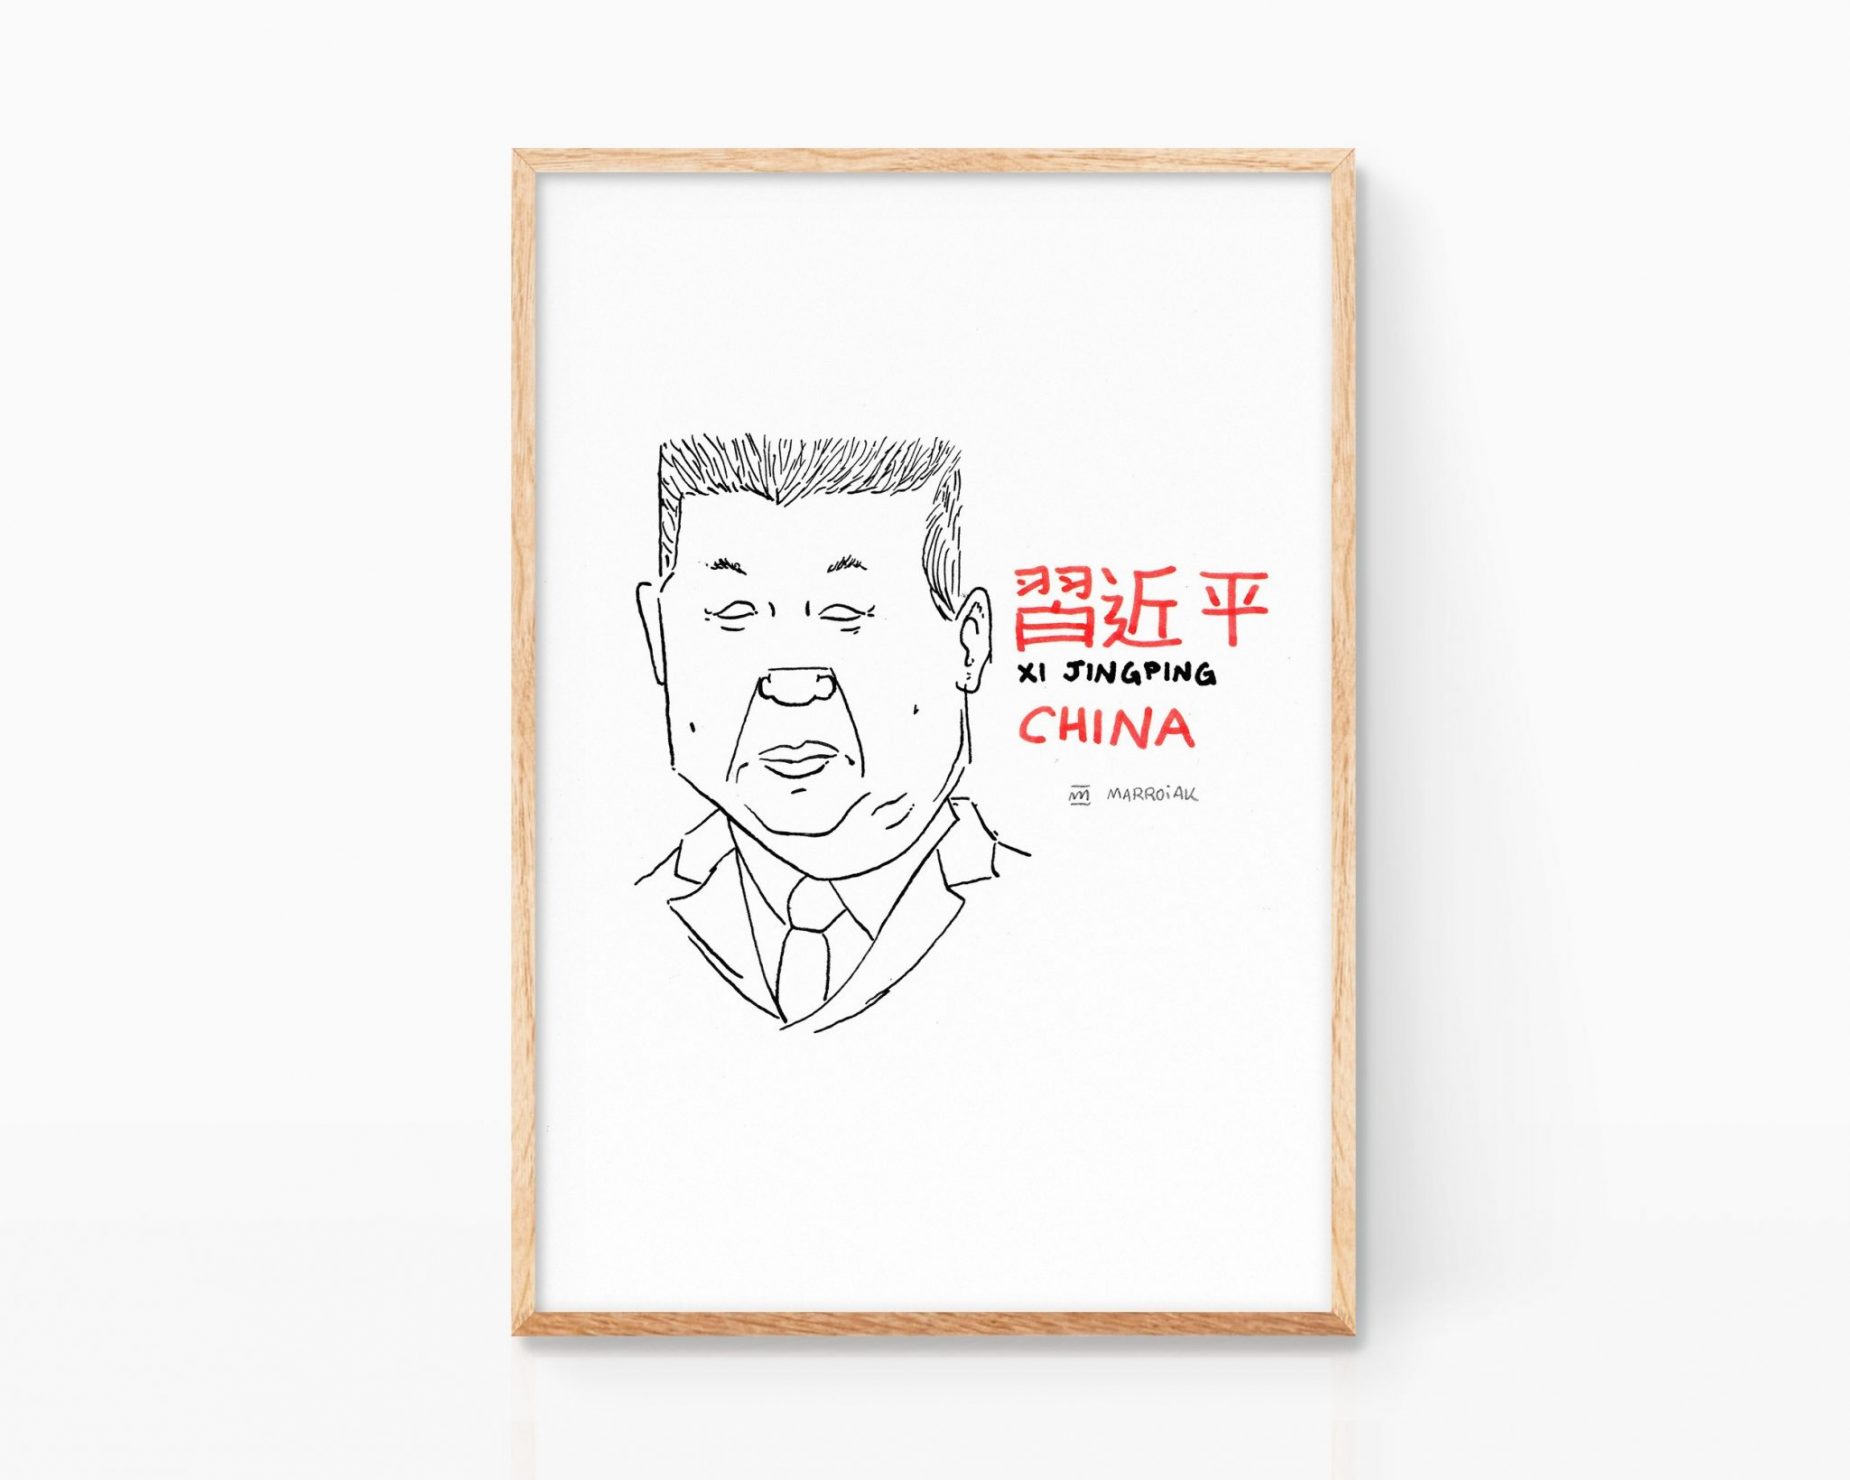 Xi-jingping retrato ilustración blanco y negro